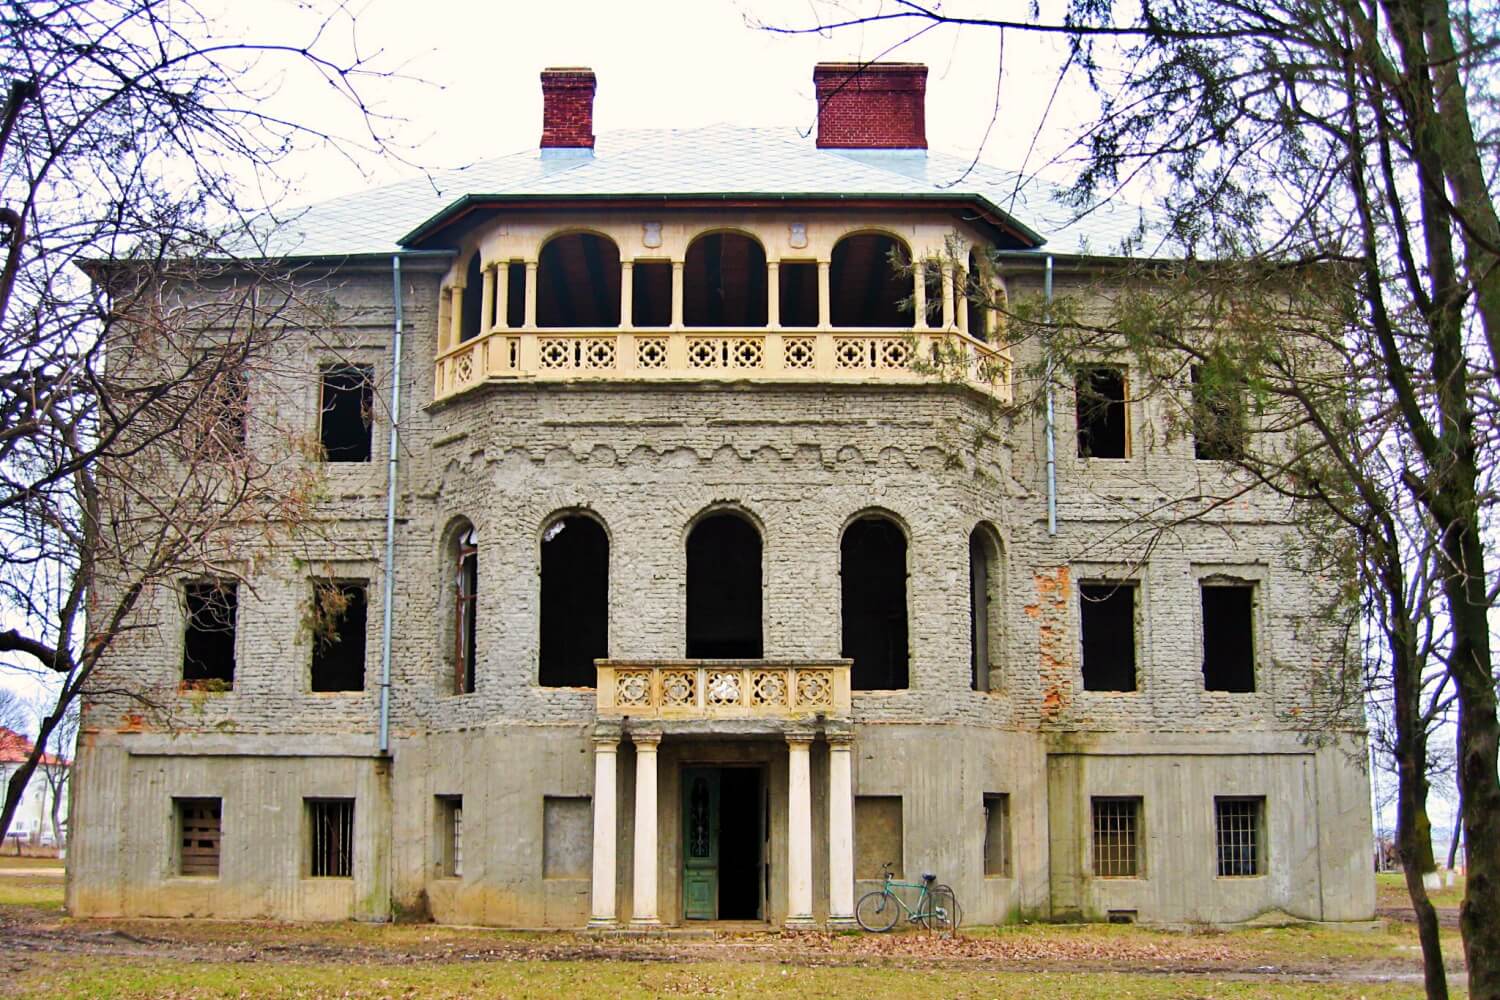 The manor of Țibănești